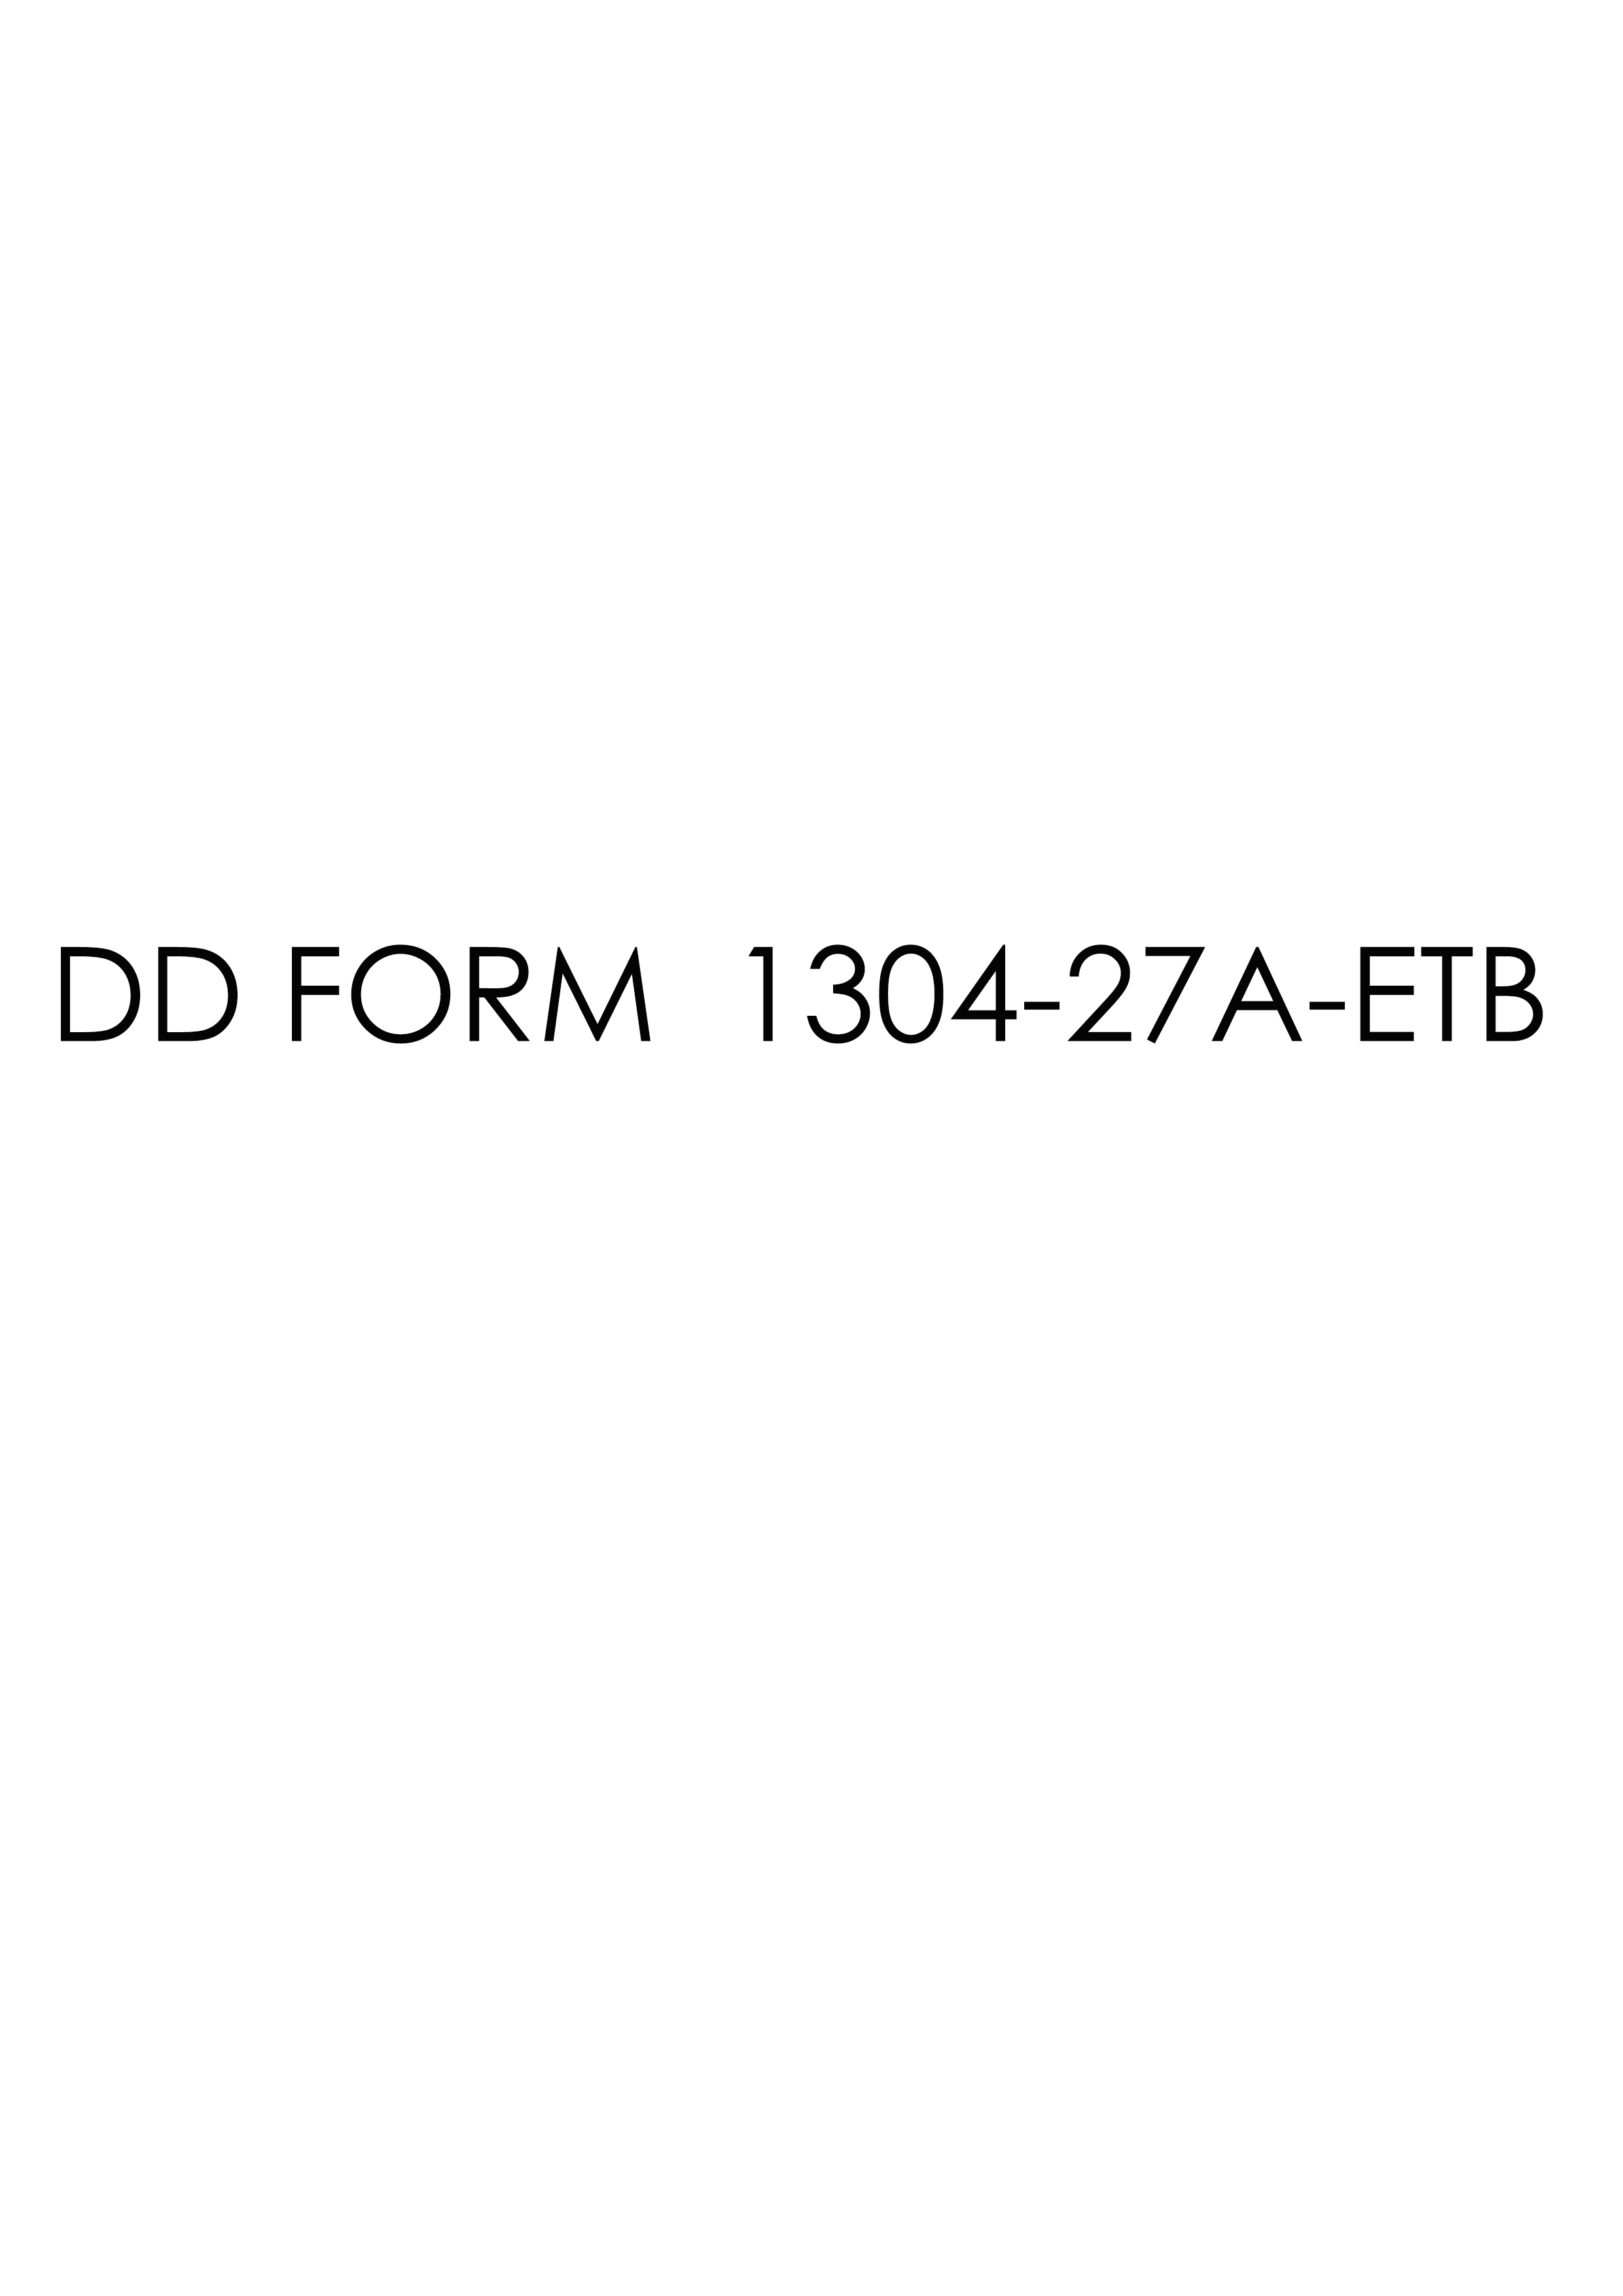 dd Form 1304-27A-ETB fillable